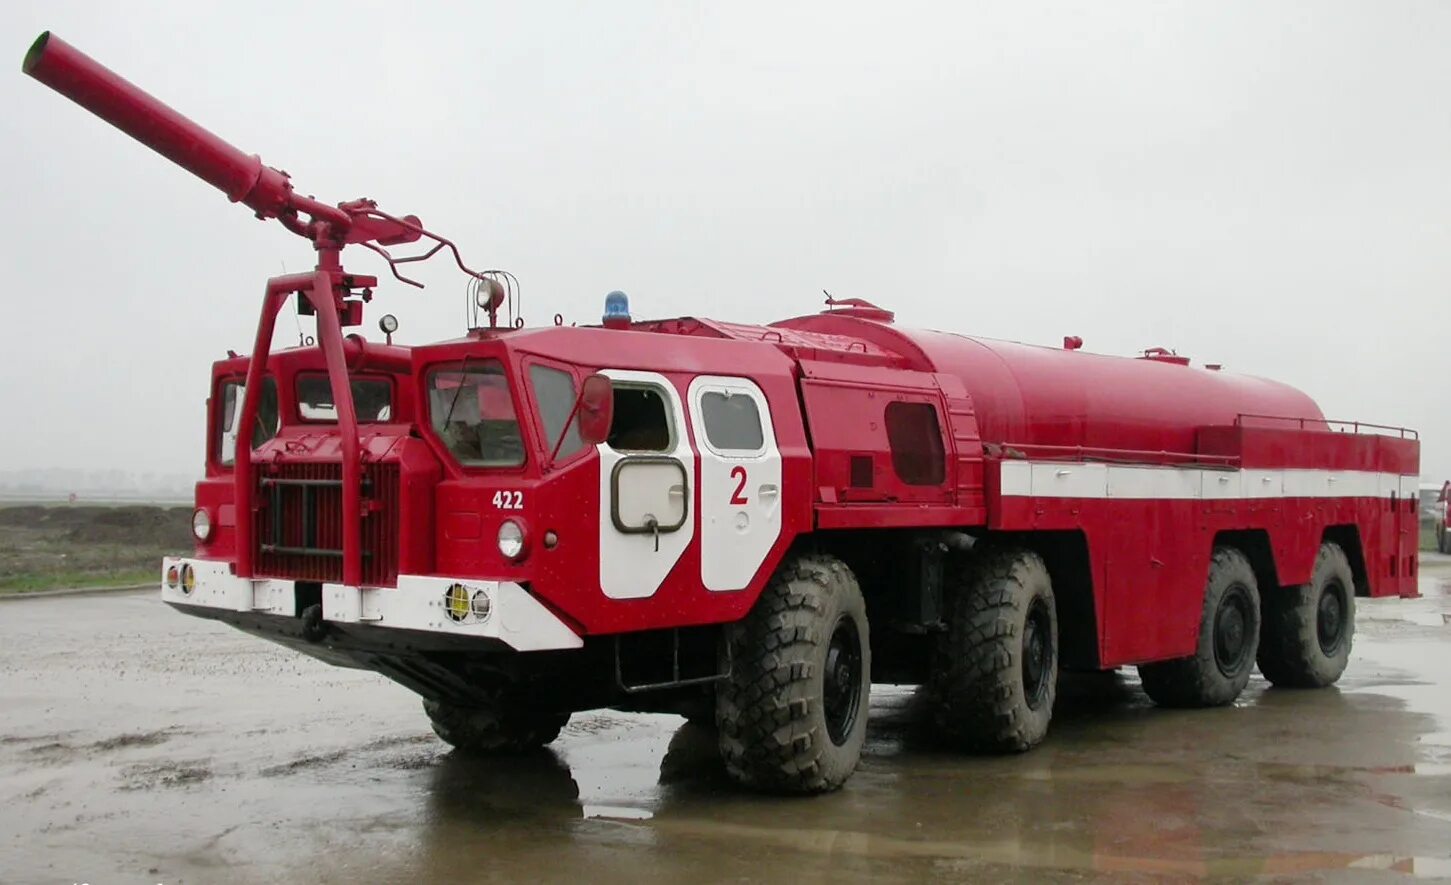 Пожарные автомобили специального назначения. АА-60 (МАЗ 7313). МАЗ-7310 АА-60. Автомобиль Аэродромный пожарный АА-60(7310). МАЗ 7310 Аэродромный пожарный.